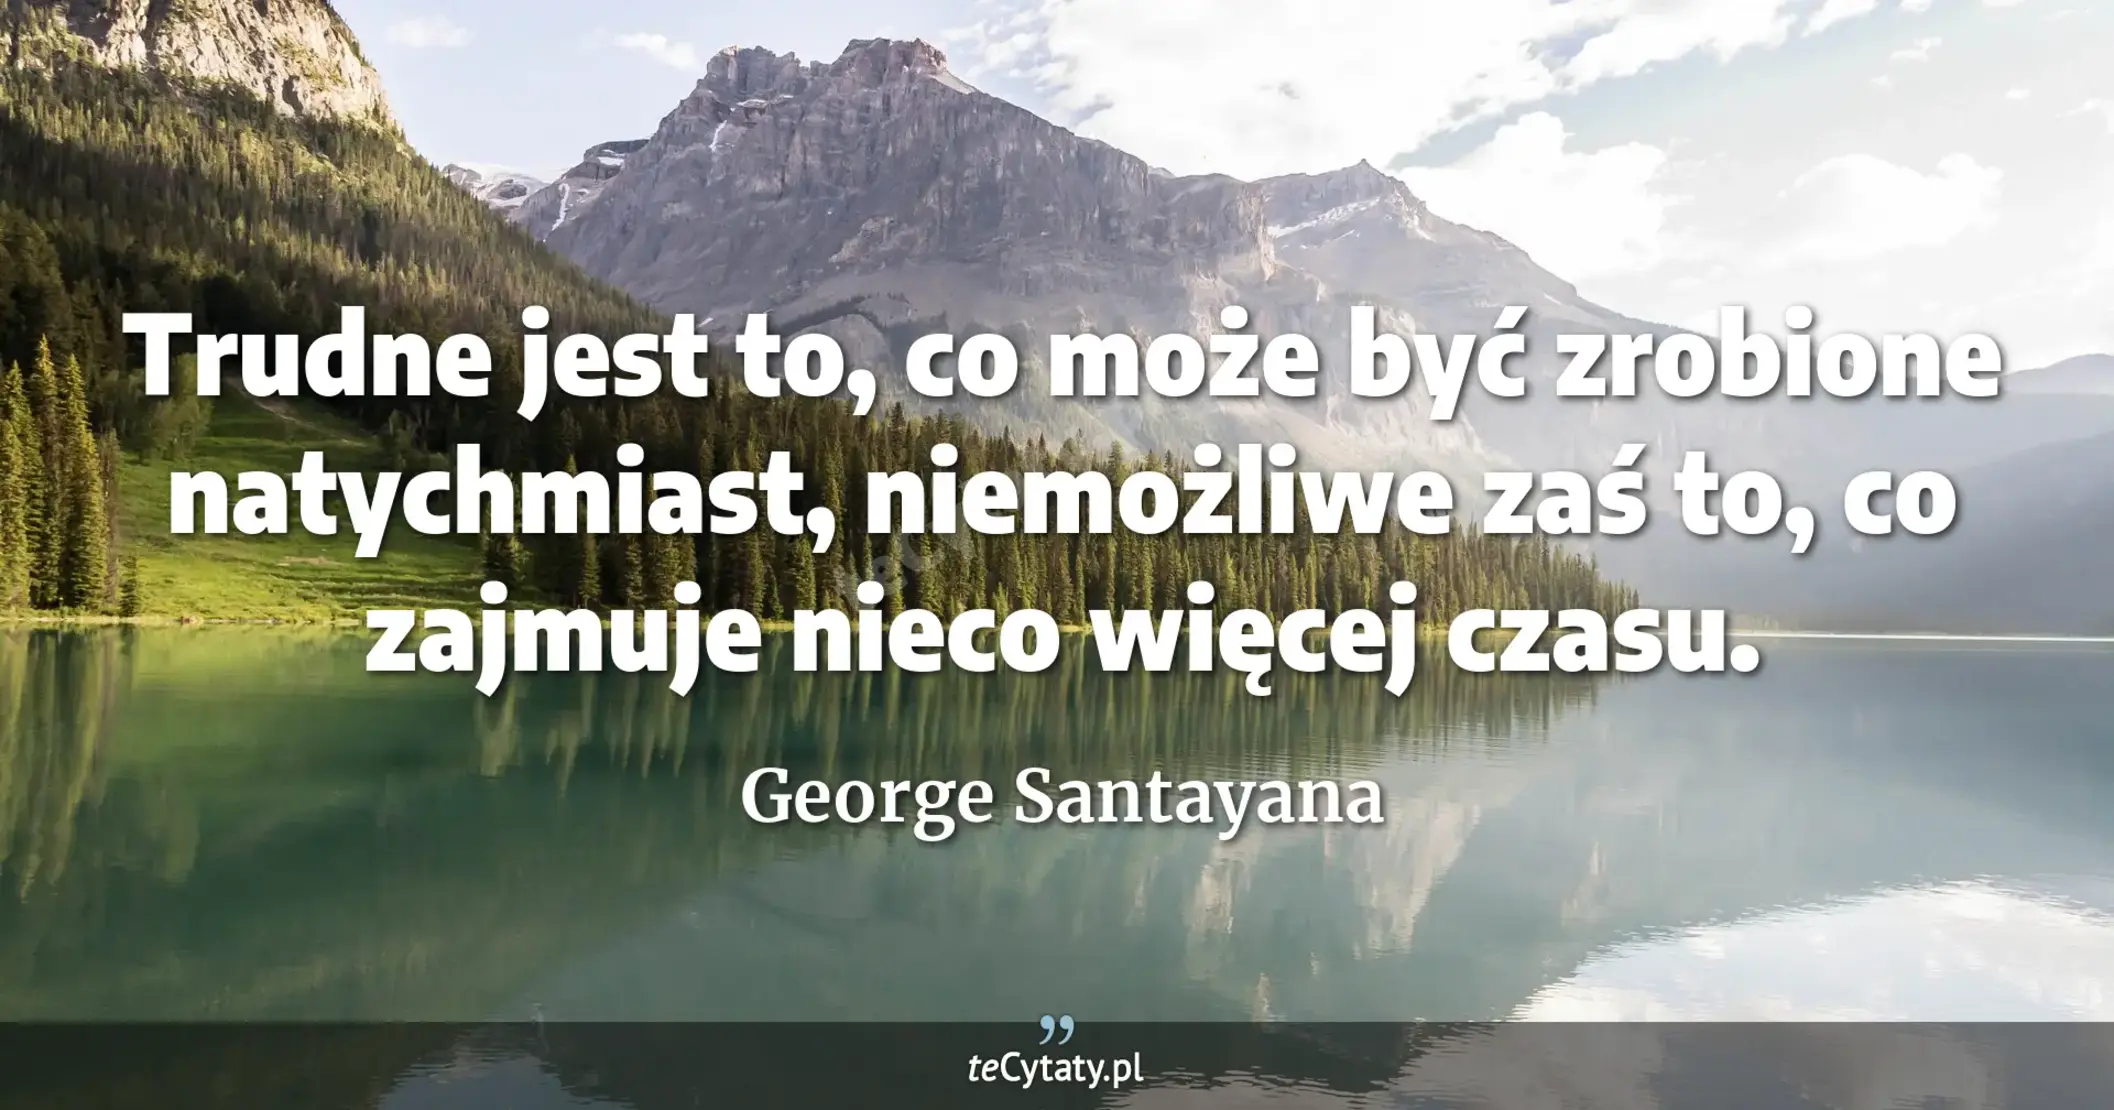 Trudne jest to, co może być zrobione natychmiast, niemożliwe zaś to, co zajmuje nieco więcej czasu. - George Santayana